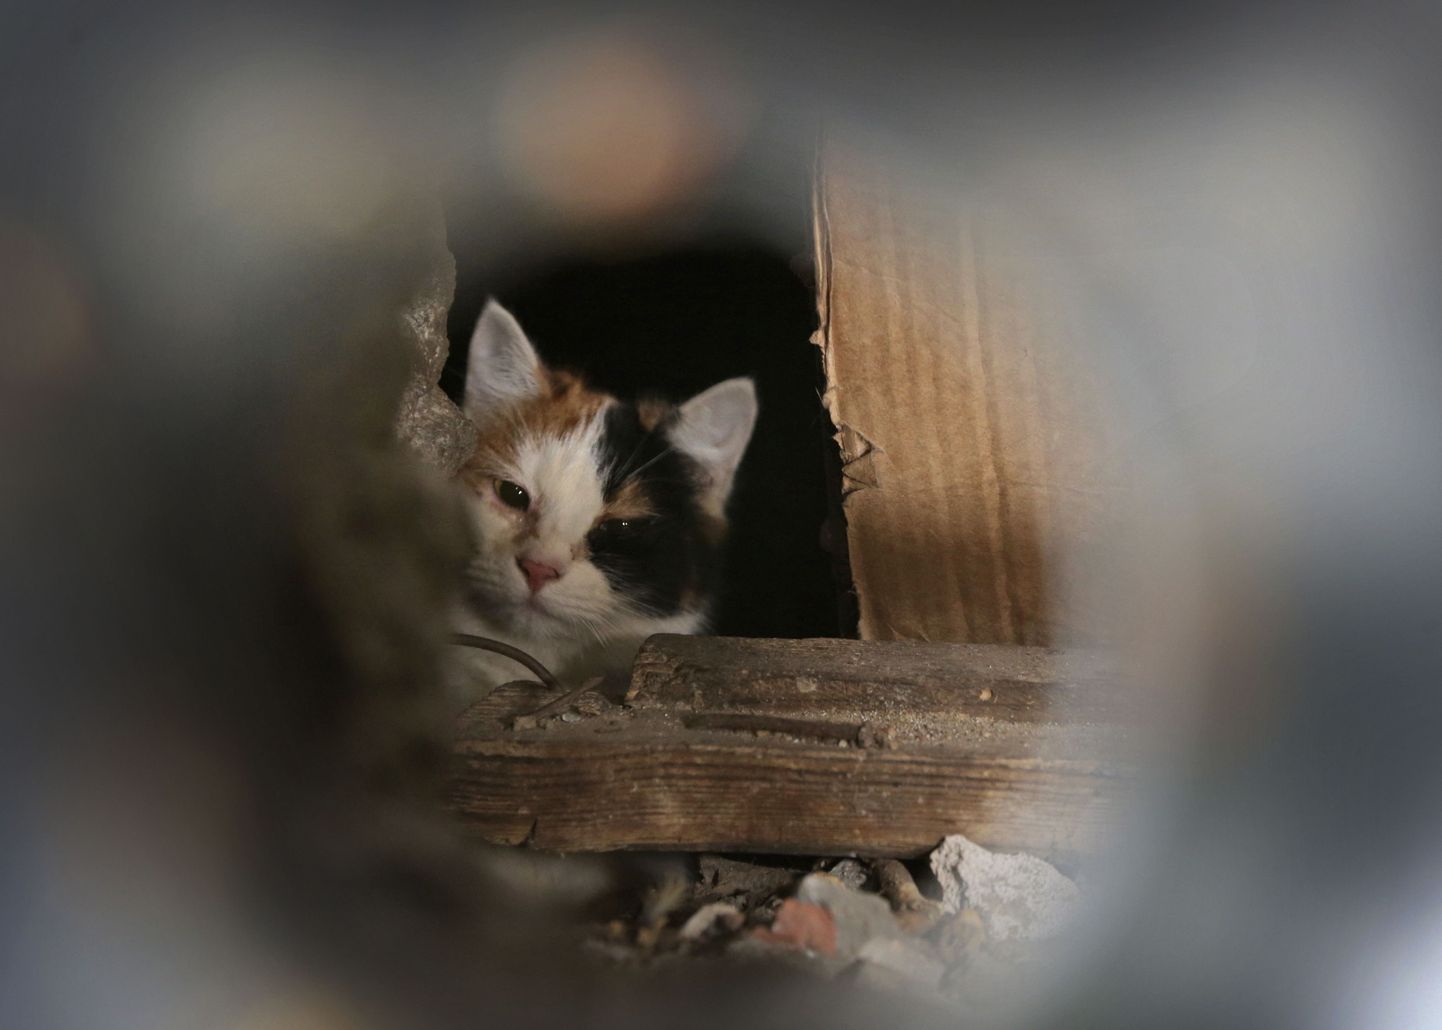 Täna tehtud fotol on näha kodutut kassi, kes on keldrisse suletud. Raudplaat keldri akna ees takistab loomal välja pääsemast.